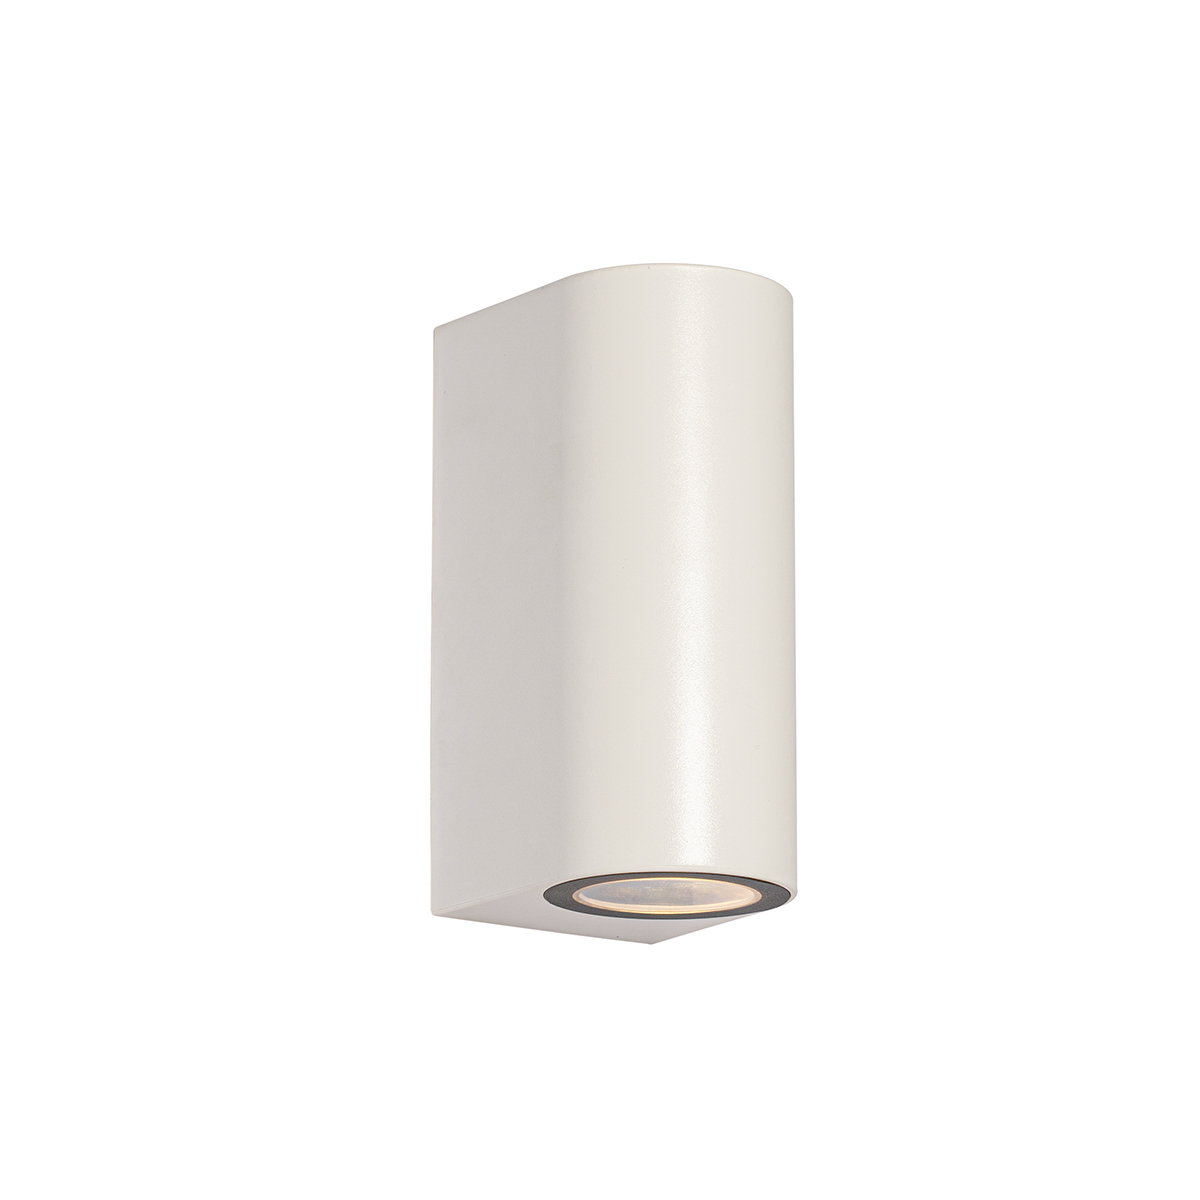 Kültéri fali lámpa fehér műanyag ovális 2 fényes - Baleno